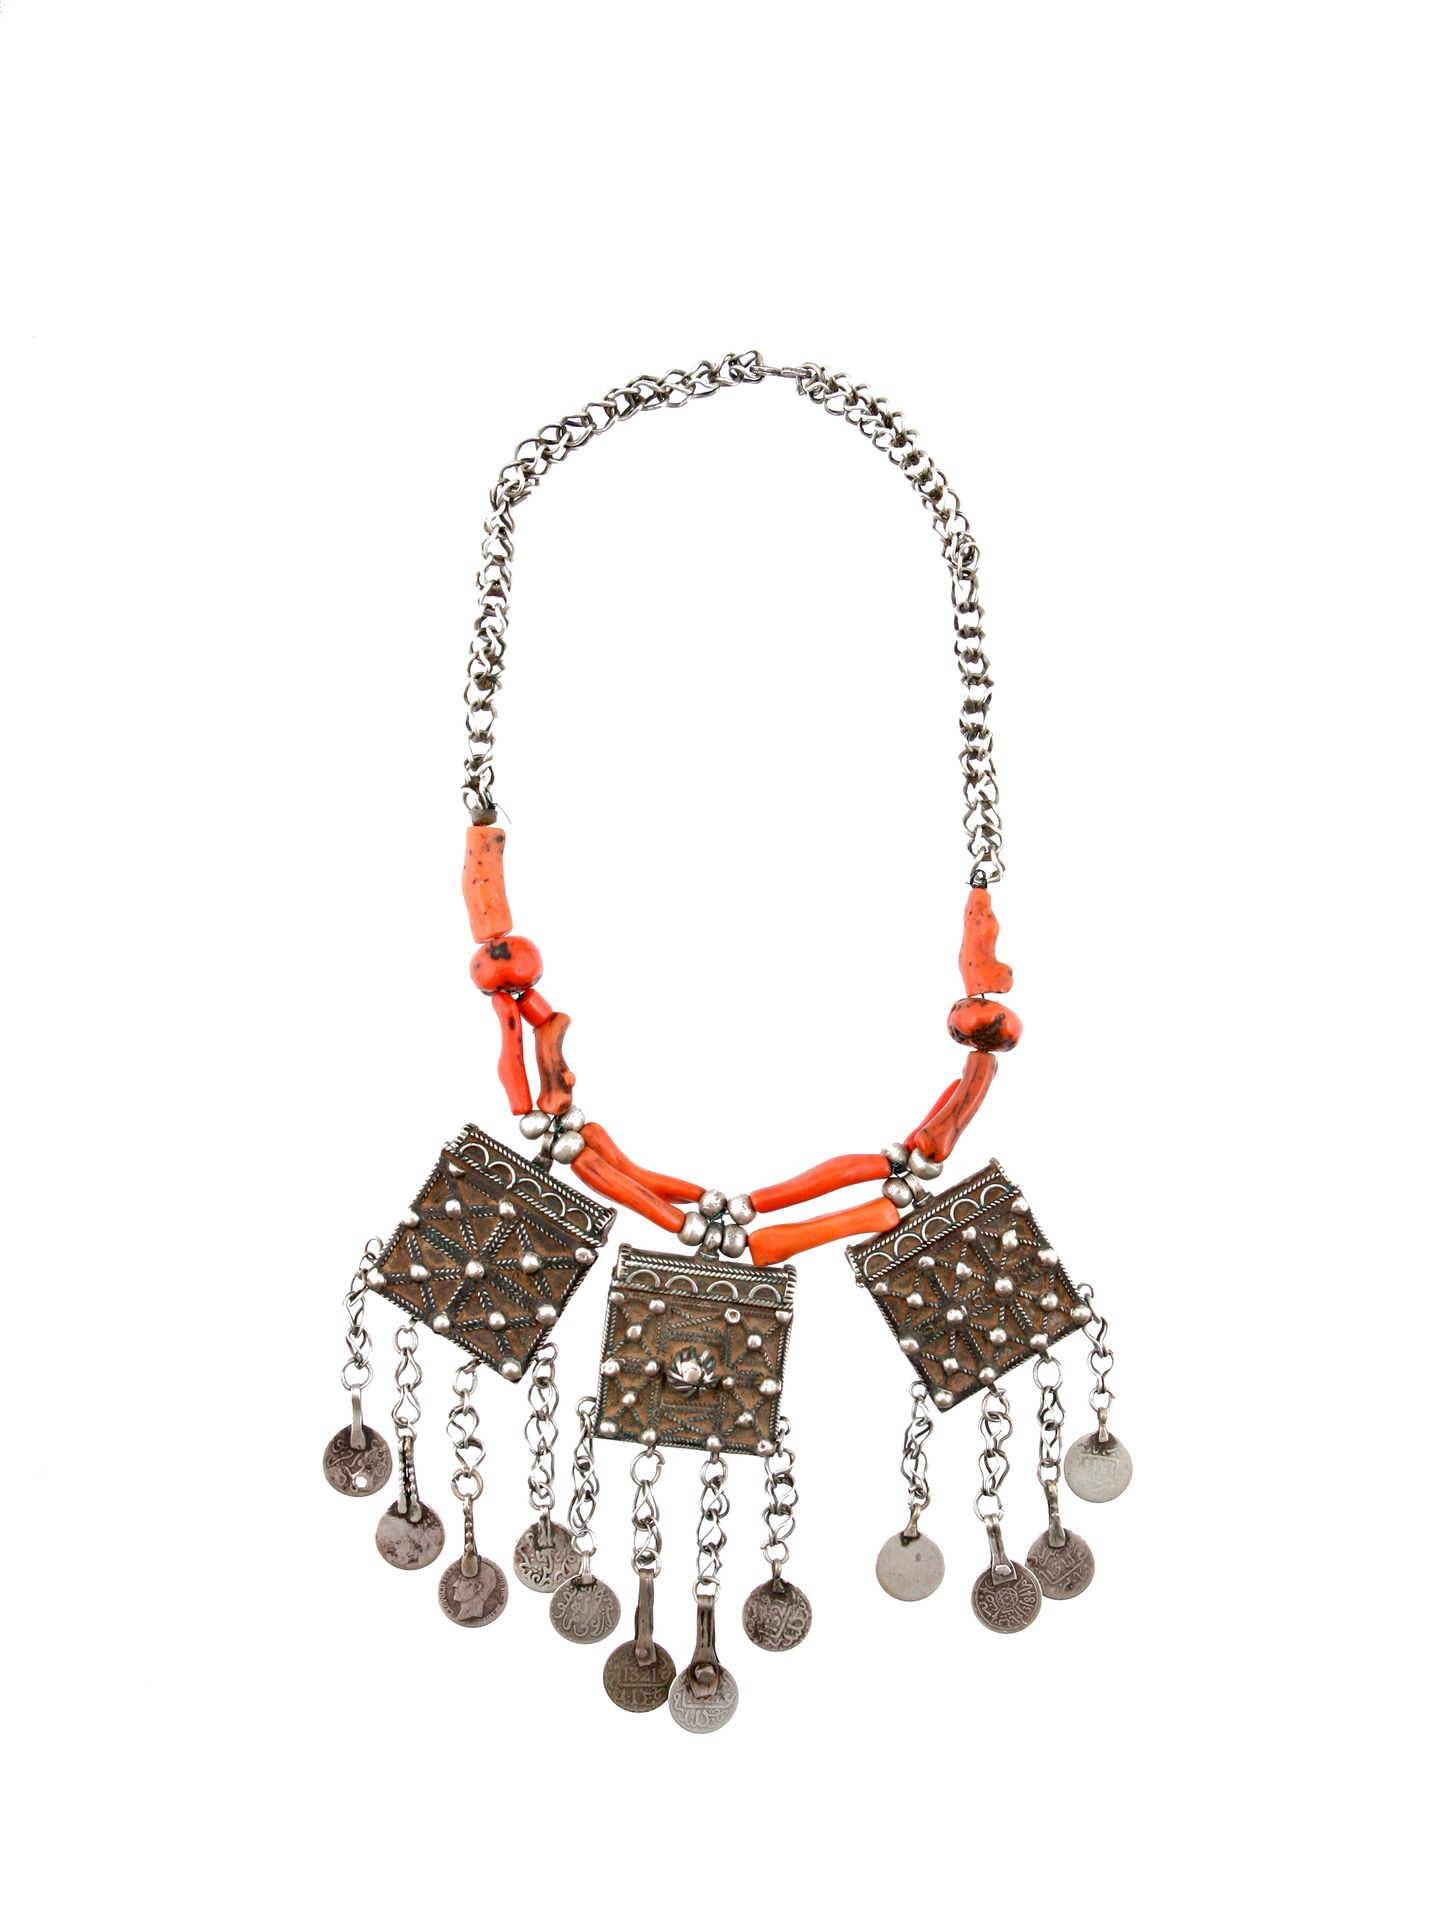 A Berber Necklace with three Pendants Collier mit drei Schmuck-Anhängern

Berber&hellip;